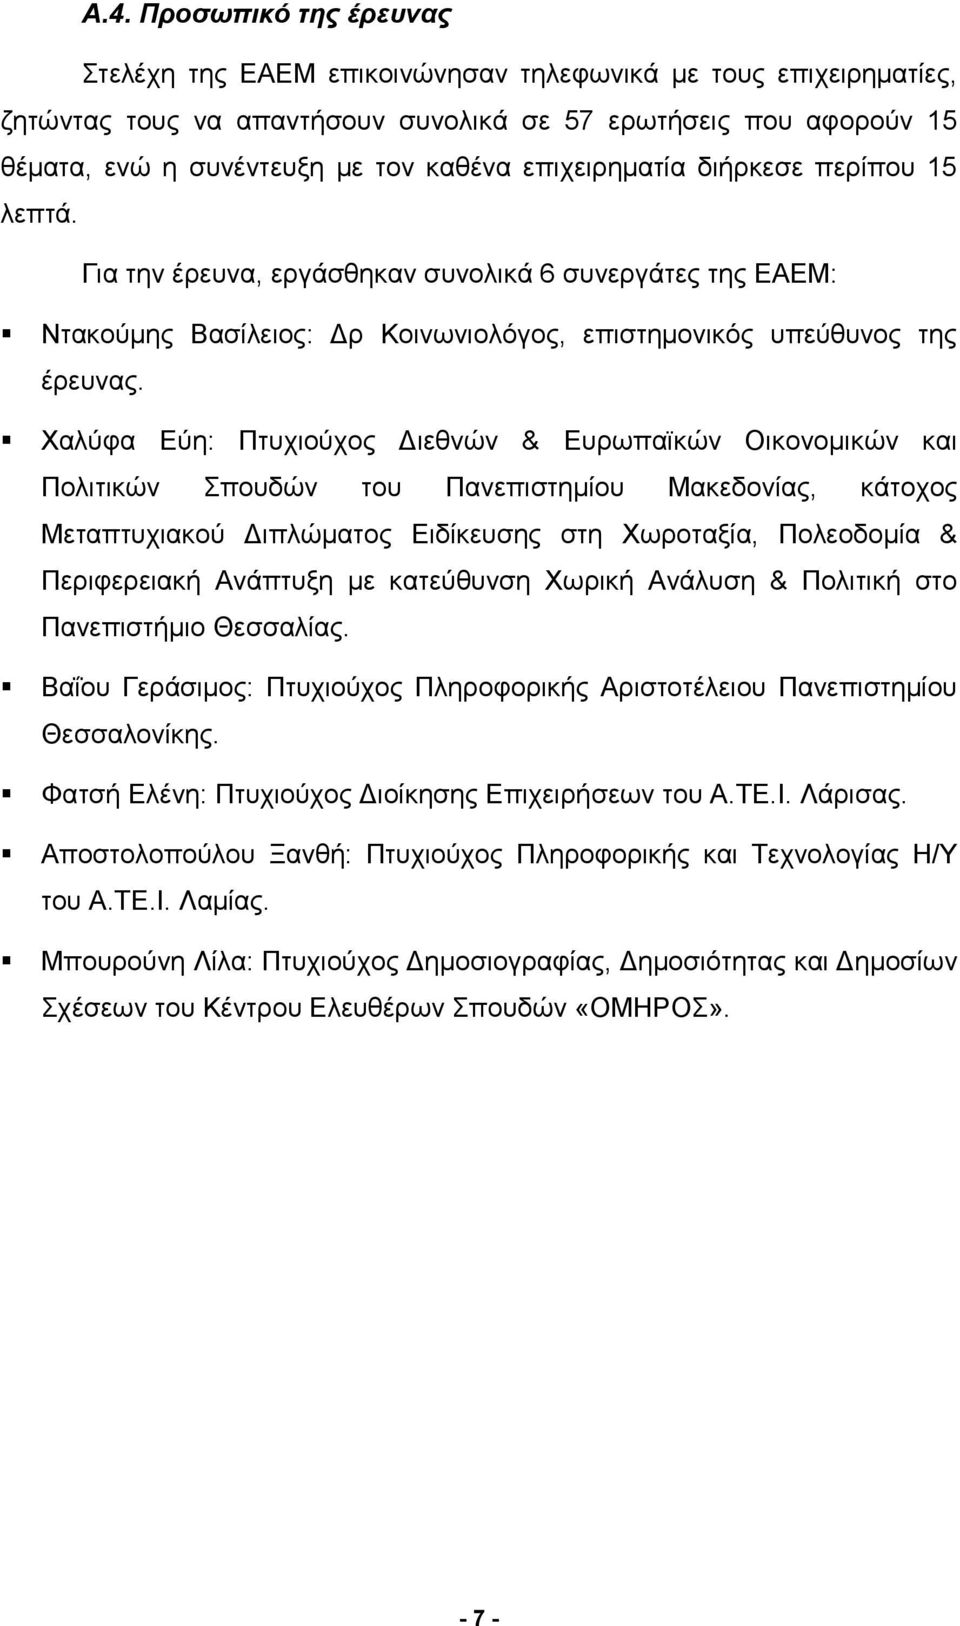 Χαλύφα Εύη: Πτυχιούχος Διεθνών & Ευρωπαϊκών Οικονομικών και Πολιτικών Σπουδών του Πανεπιστημίου Μακεδονίας, κάτοχος Μεταπτυχιακού Διπλώματος Ειδίκευσης στη Χωροταξία, Πολεοδομία & Περιφερειακή